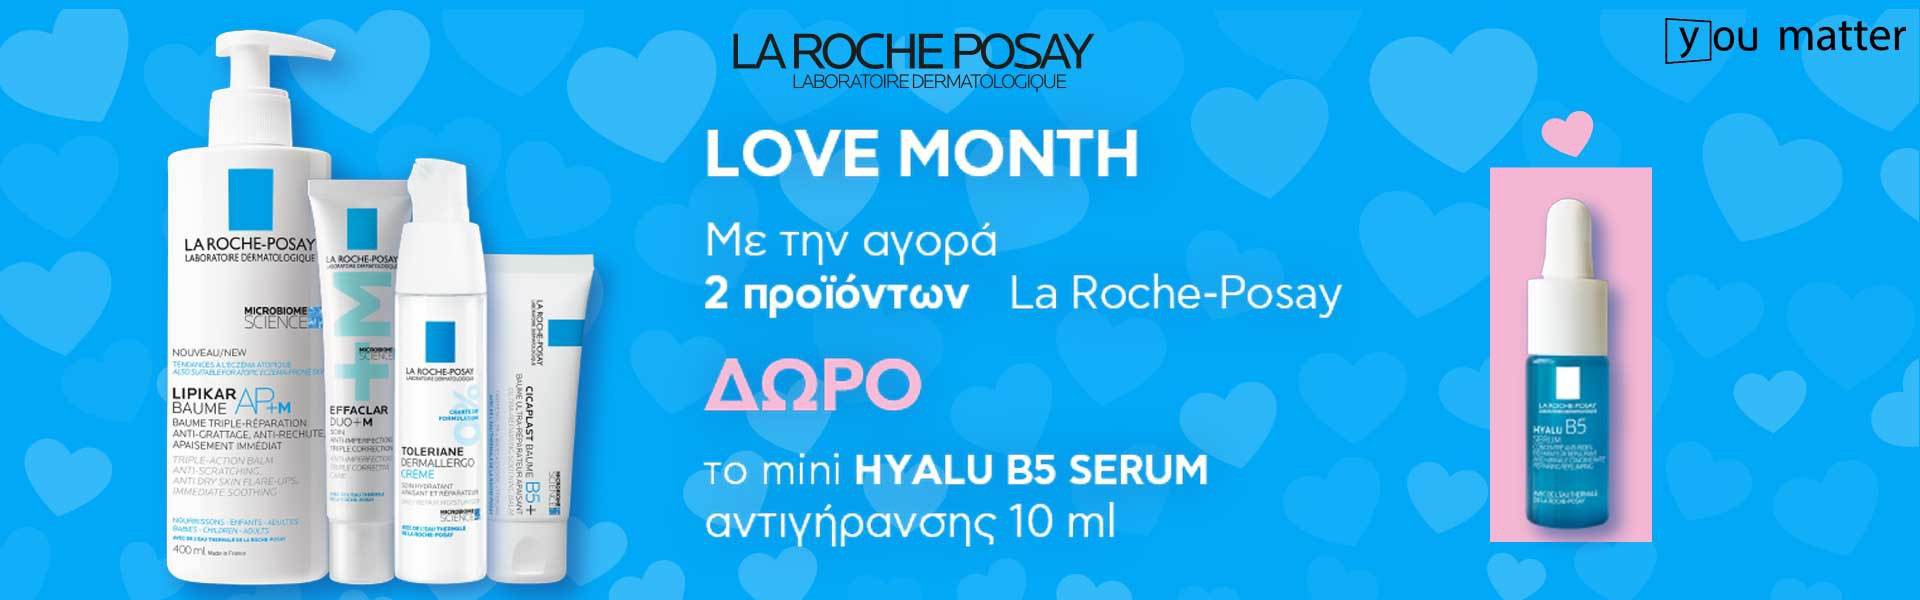 La Roche Posay Love Month